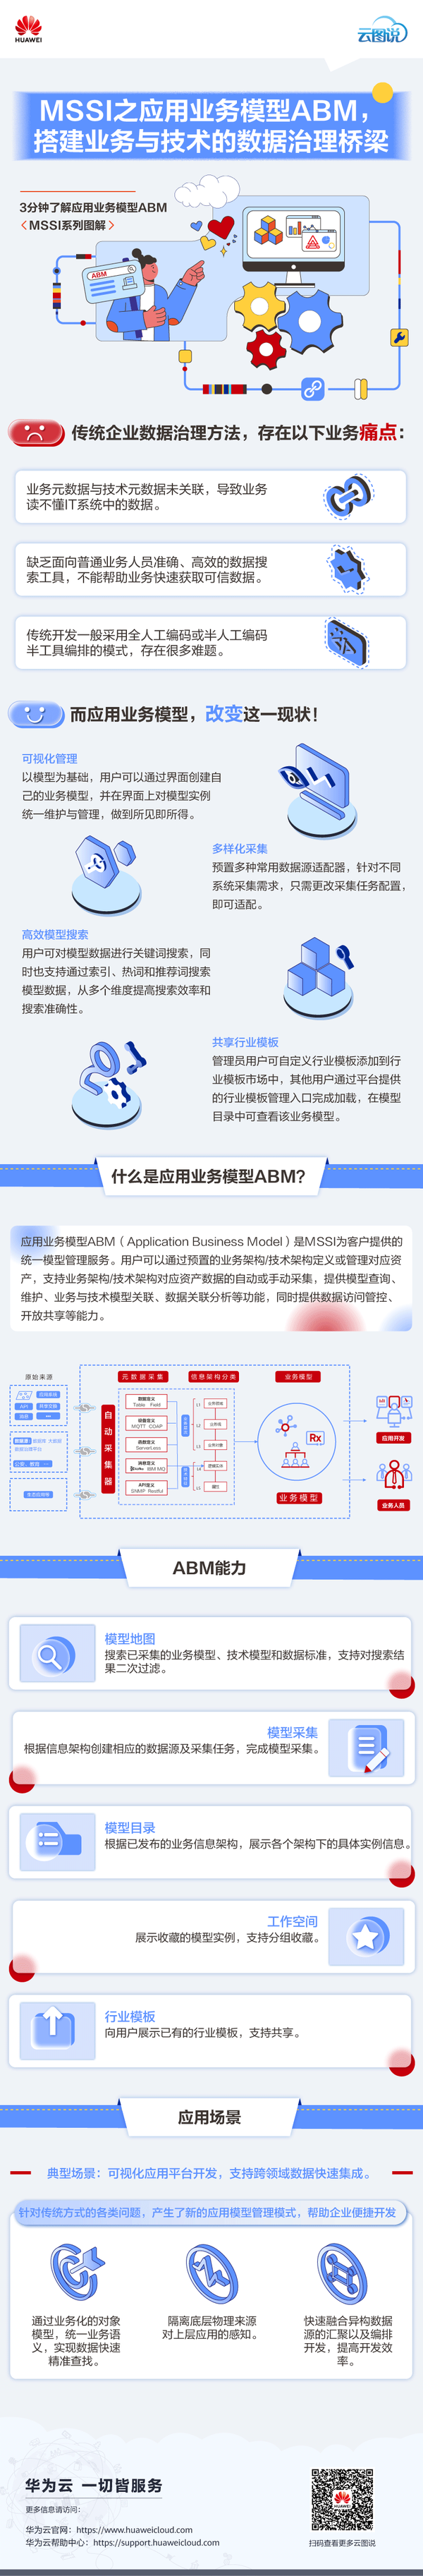 云图说 | MSSI之应用业务模型ABM，搭建业务与技术的数据治理桥梁